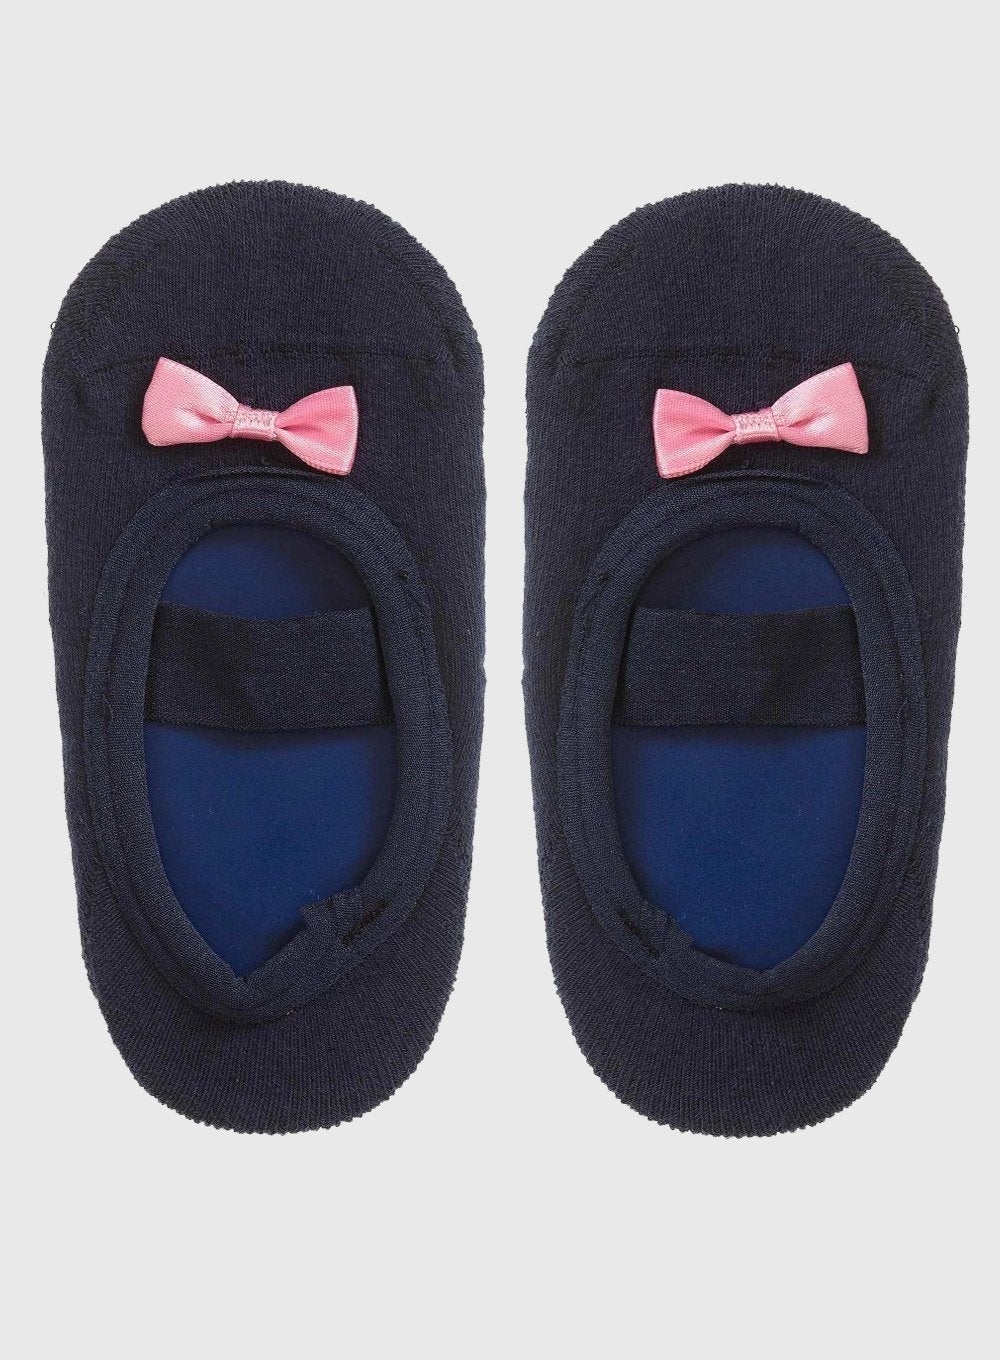 Heat Holders Thermal Ankle Non-Slip-Grip Winter Warm Slipper Socks  Navy-Denim Tw | eBay